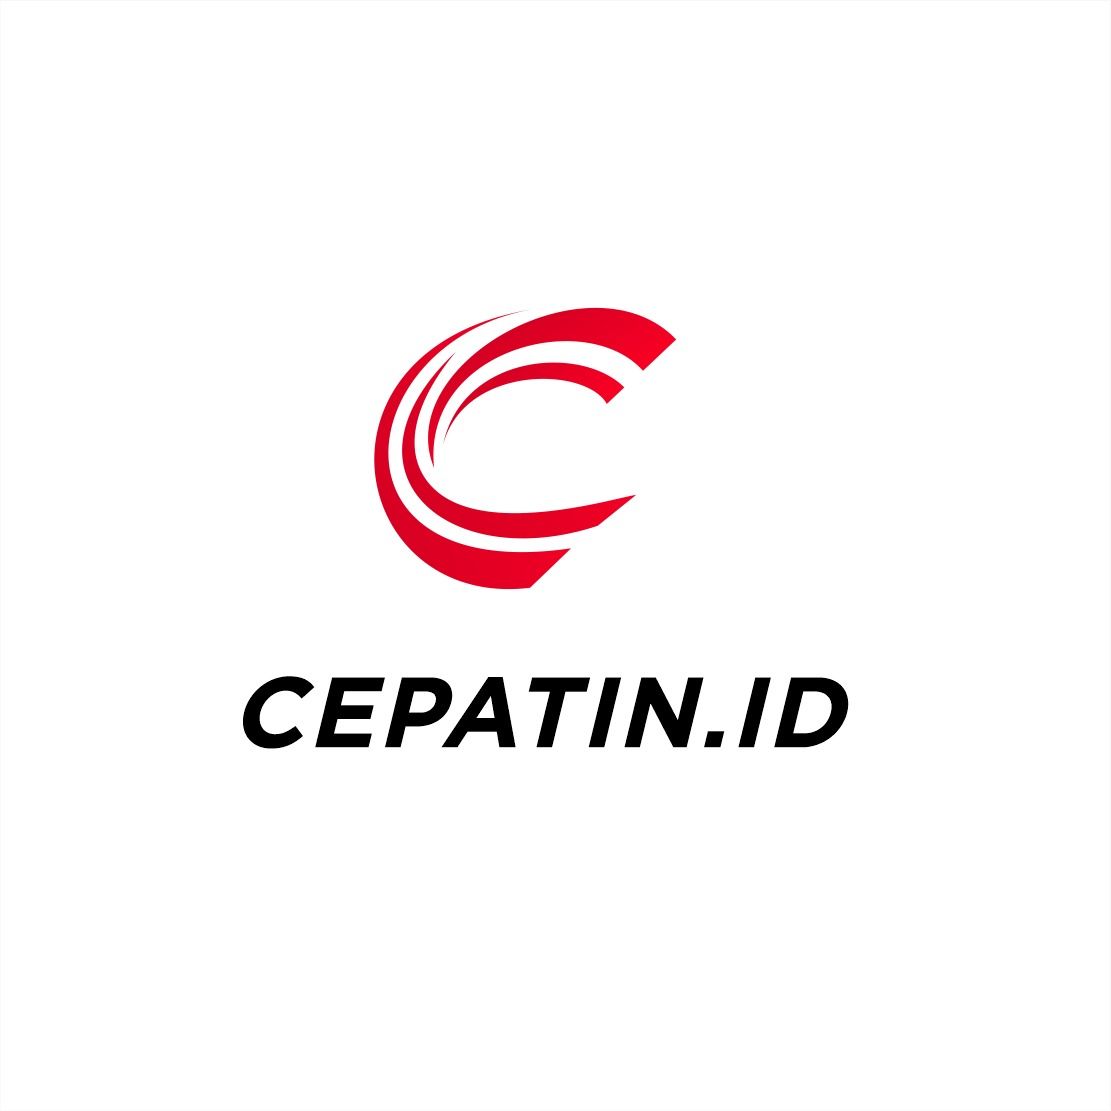 CEPATIN.ID